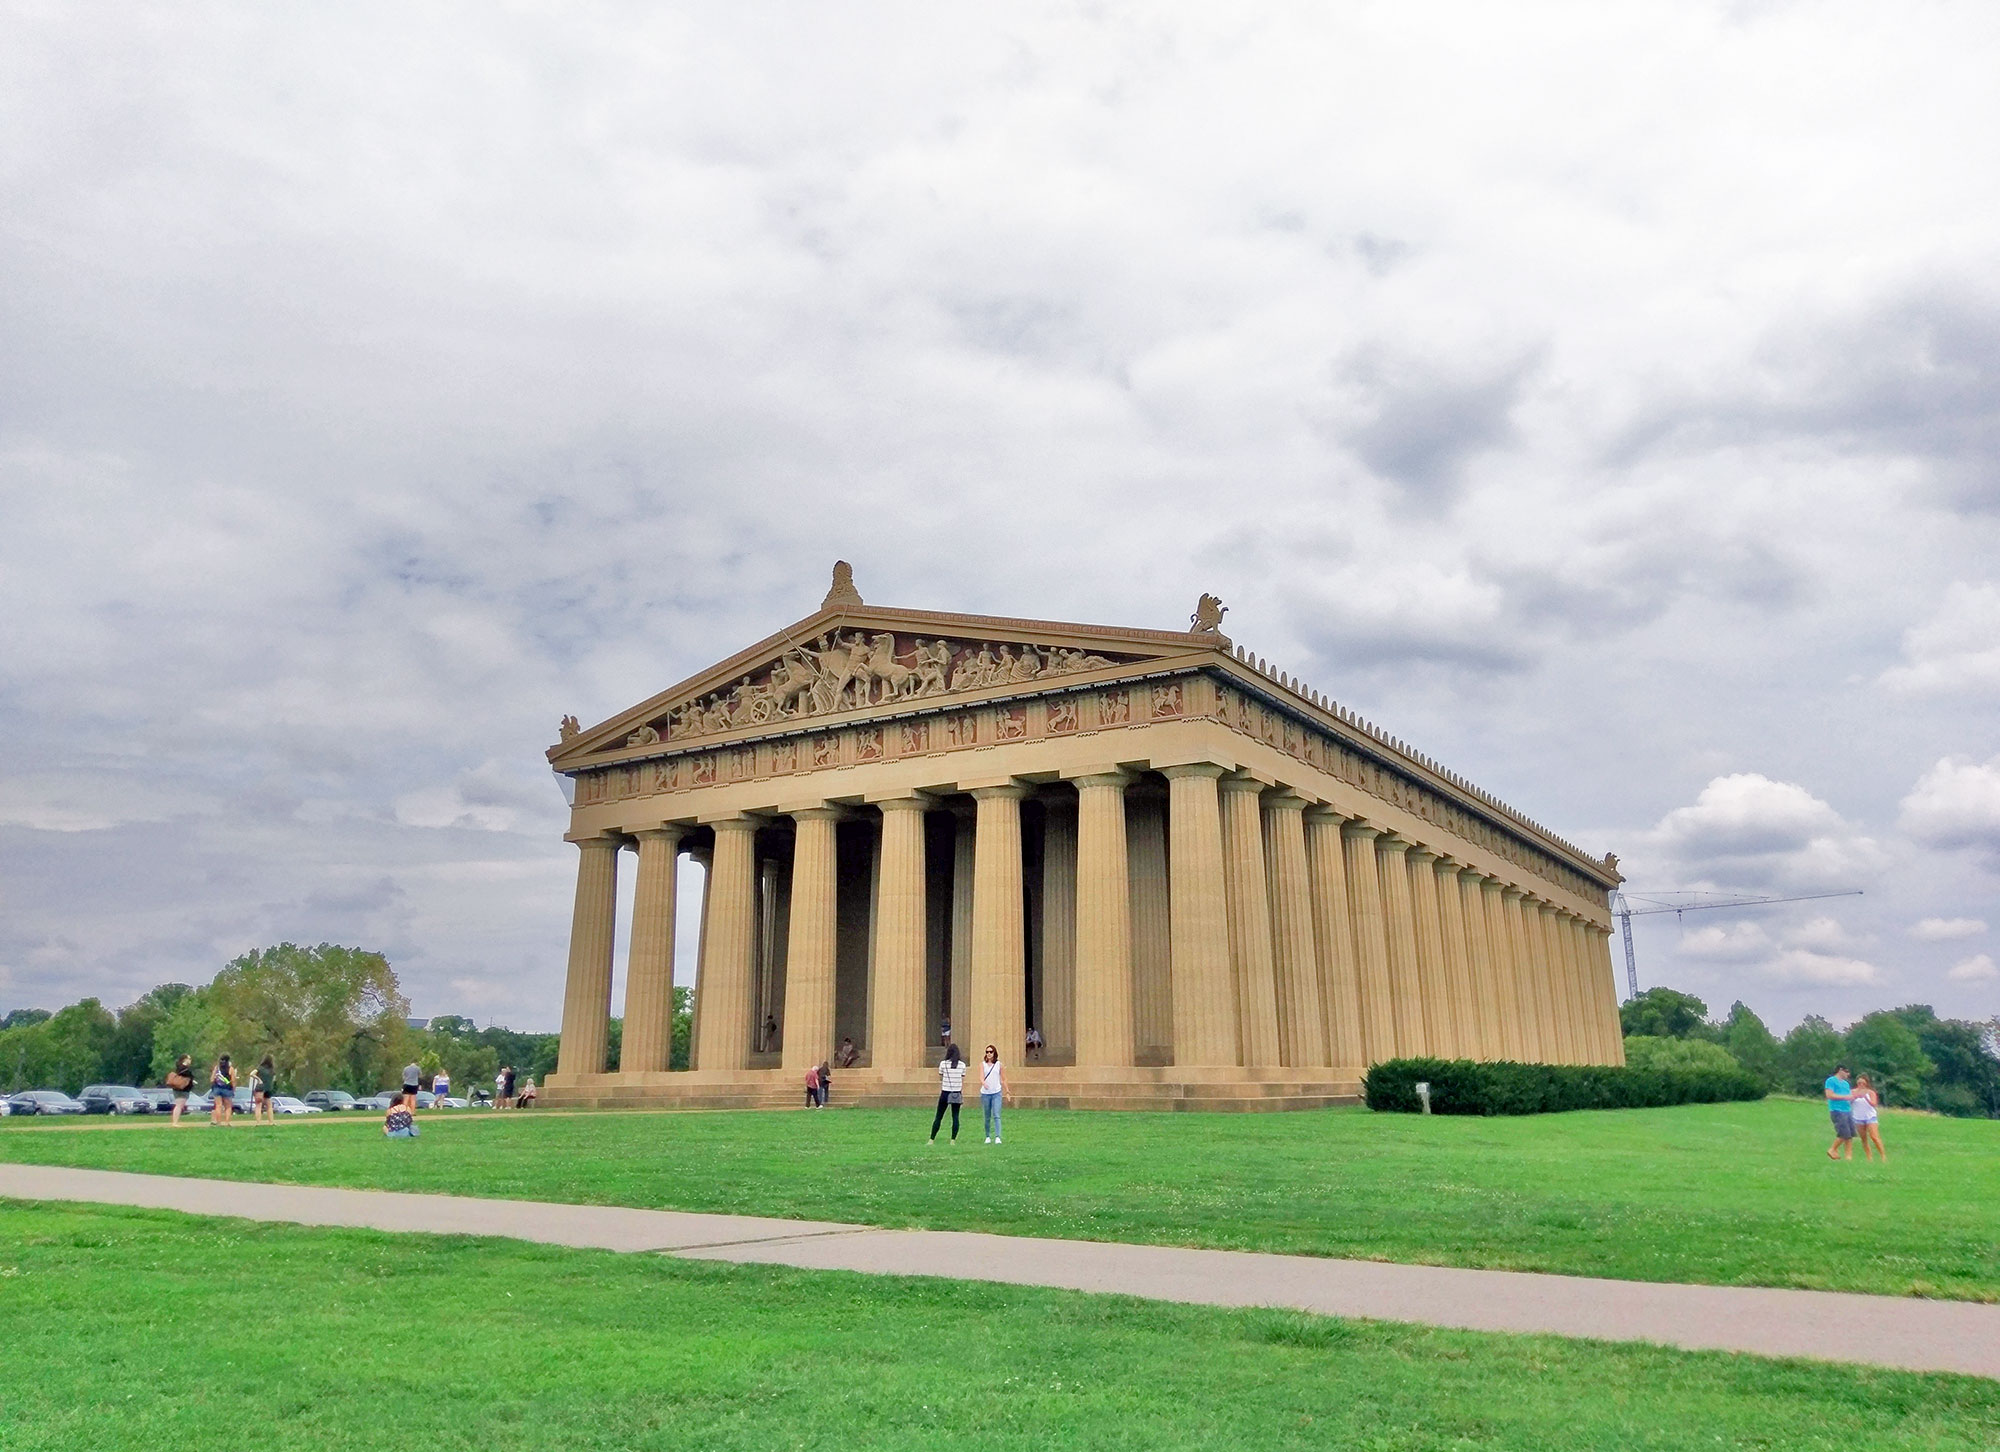 The Parthenon replica in Nashville.